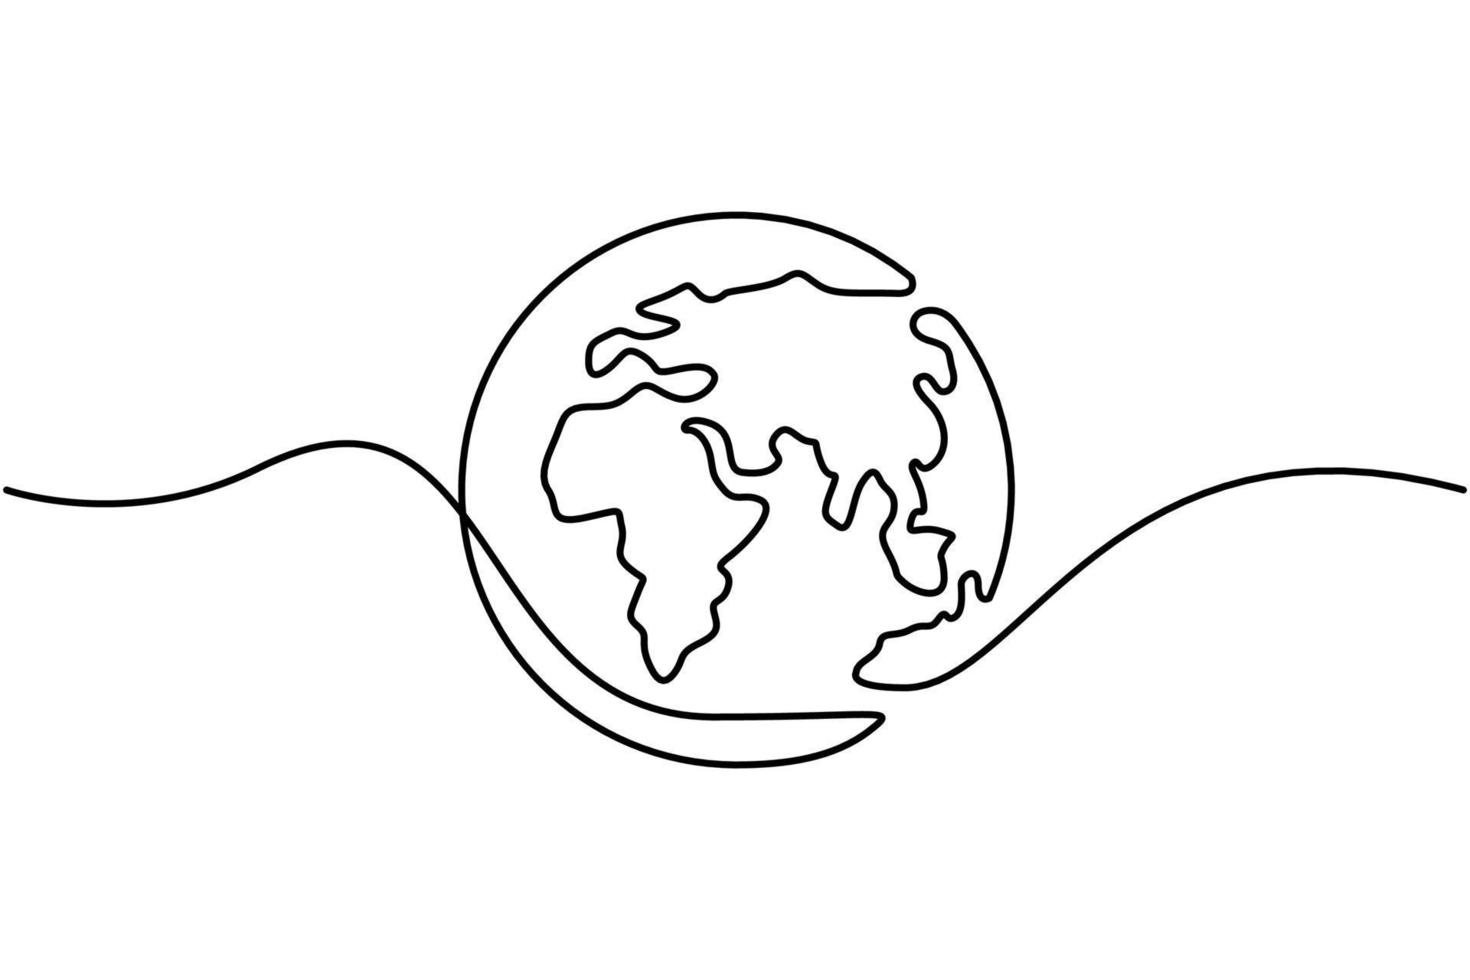 continuo uno linea disegno un' mondo carta geografica vettore su bianca sfondo. mondo carta geografica punto e linea composizione concetto di globale attività commerciale. vettore illustrazione gratuito vettore